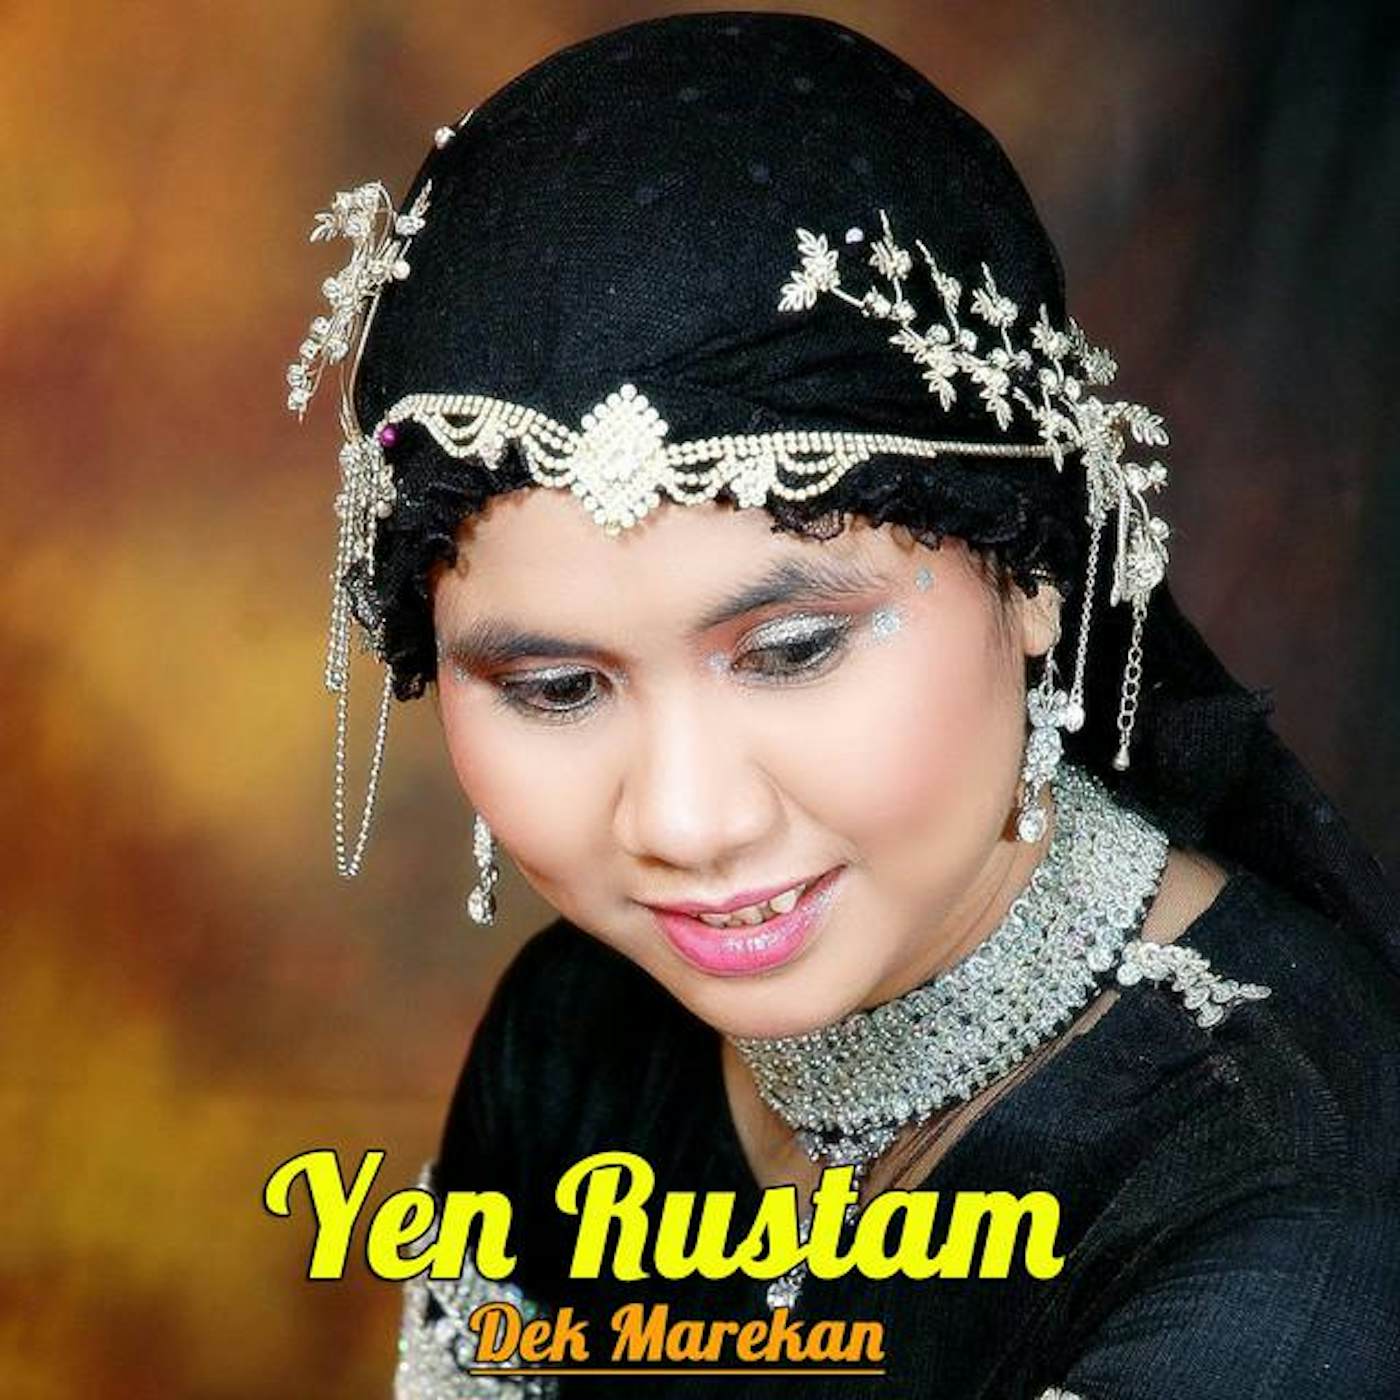 Yen Rustam